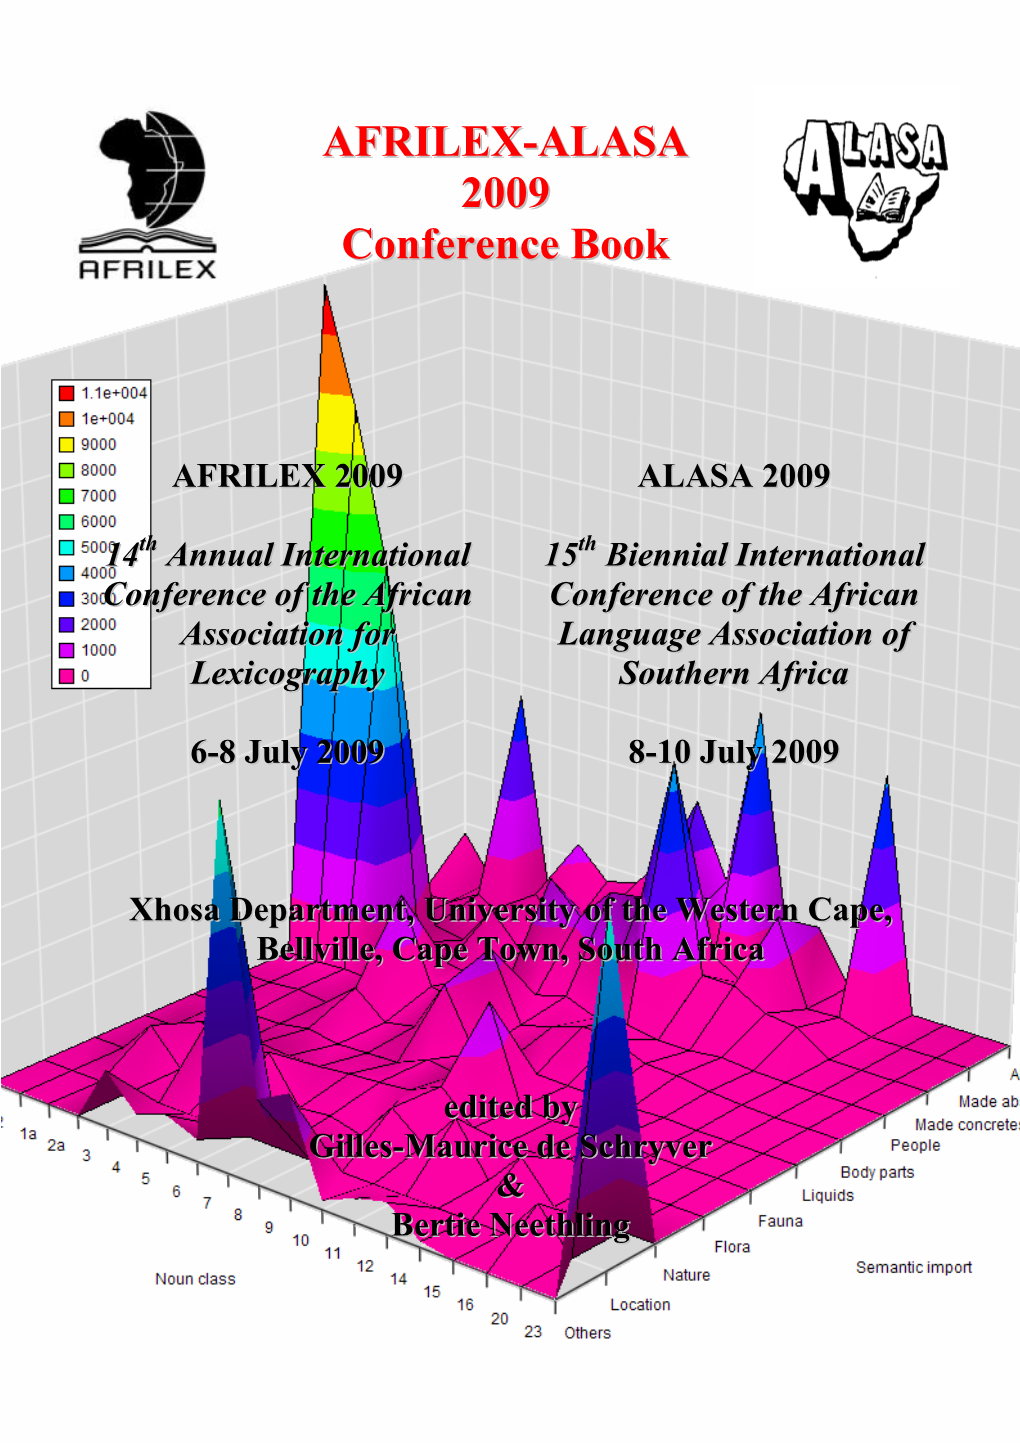 AFRILEX-ALASA 2009 Conference Book